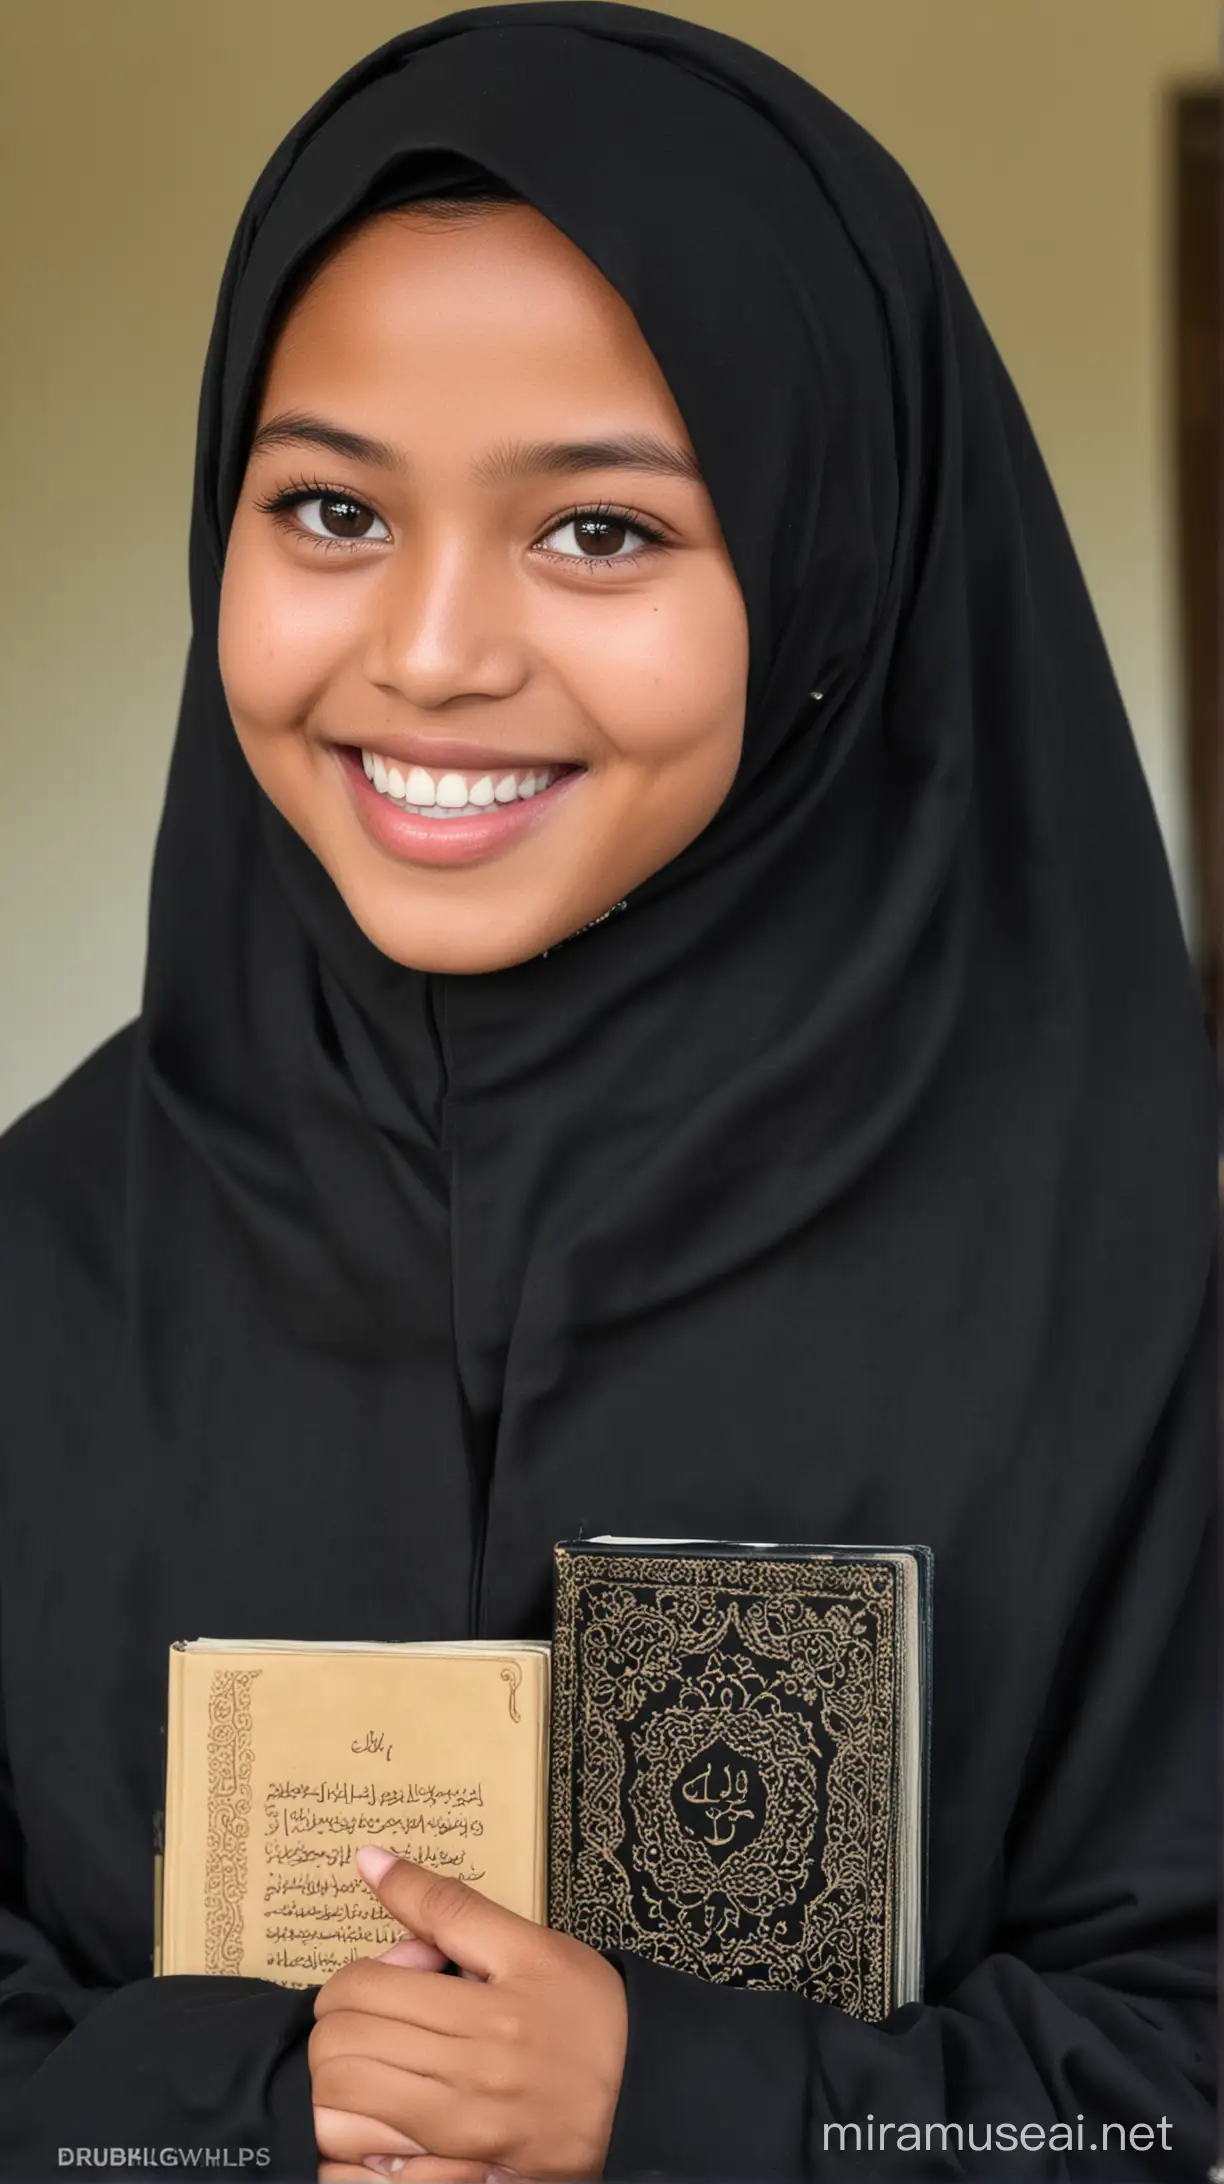 Indonesian Muslim Schoolgirl Smiling with Quran in Boarding School